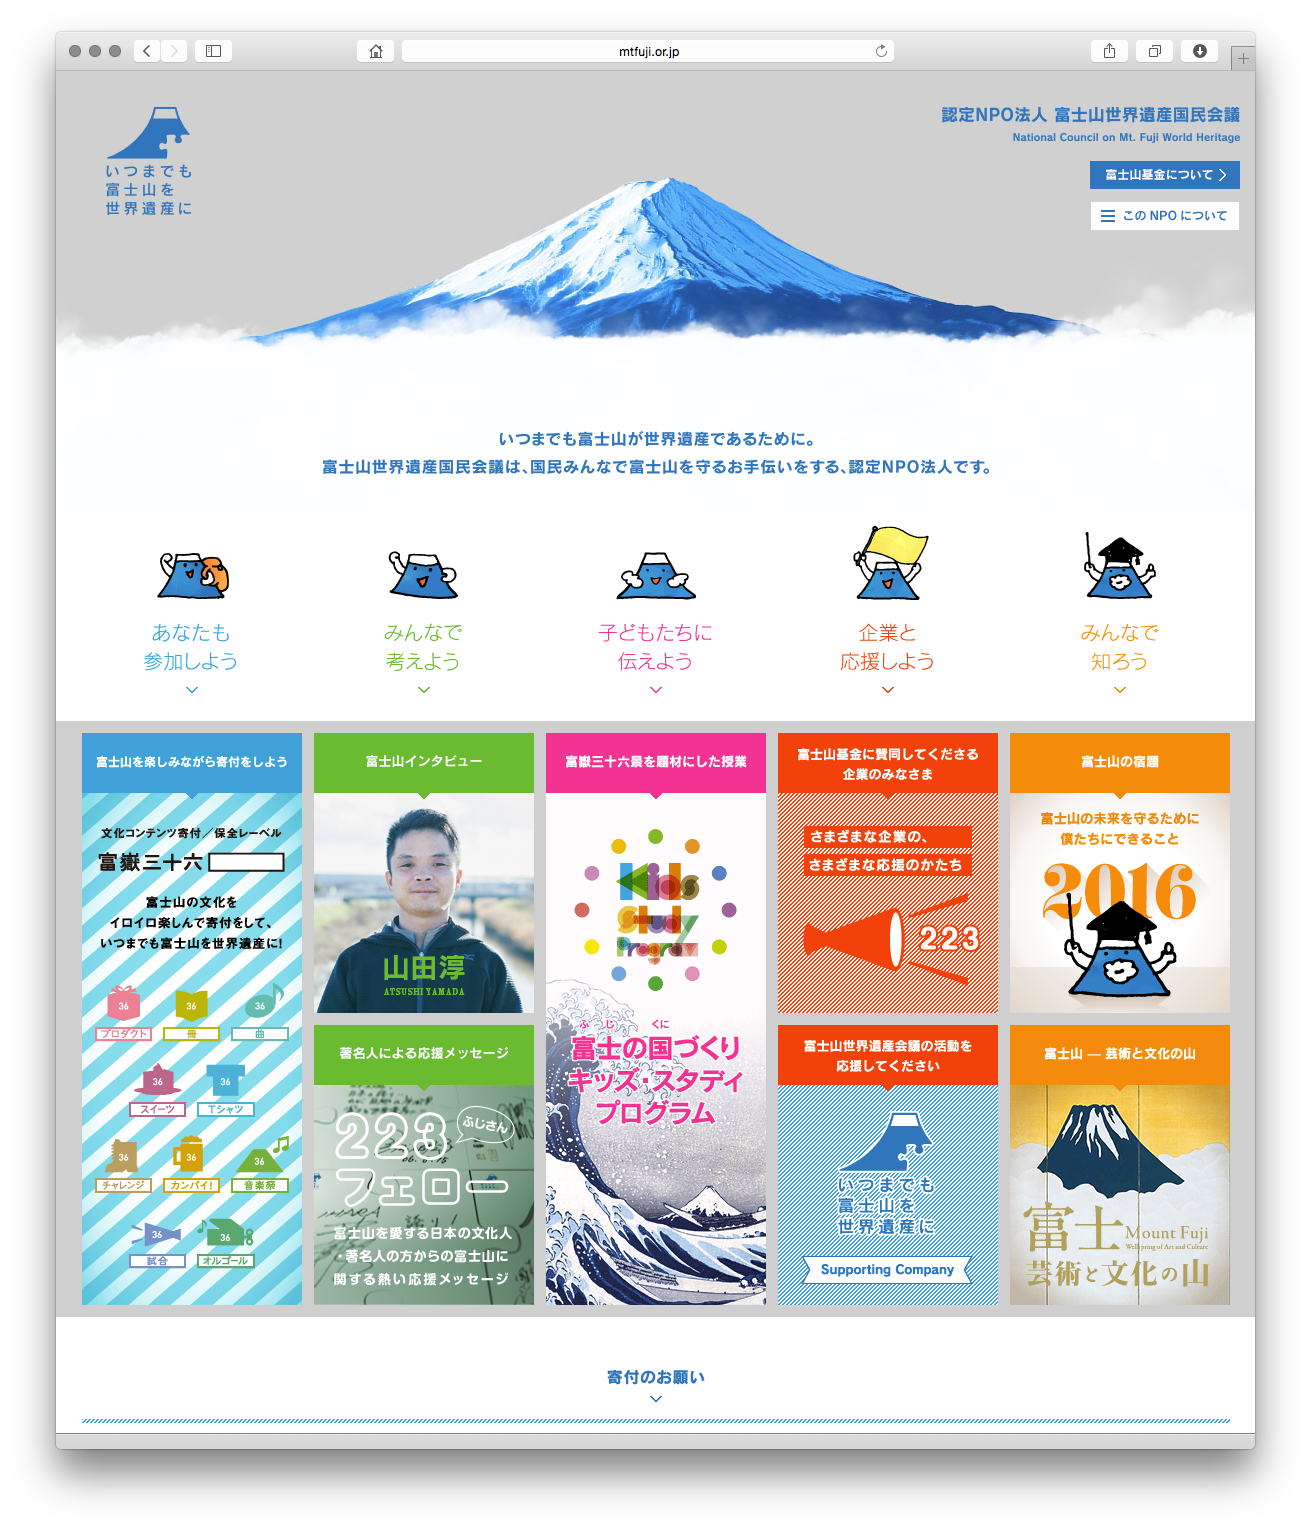 富士山世界遺産国民会議ホームページ。